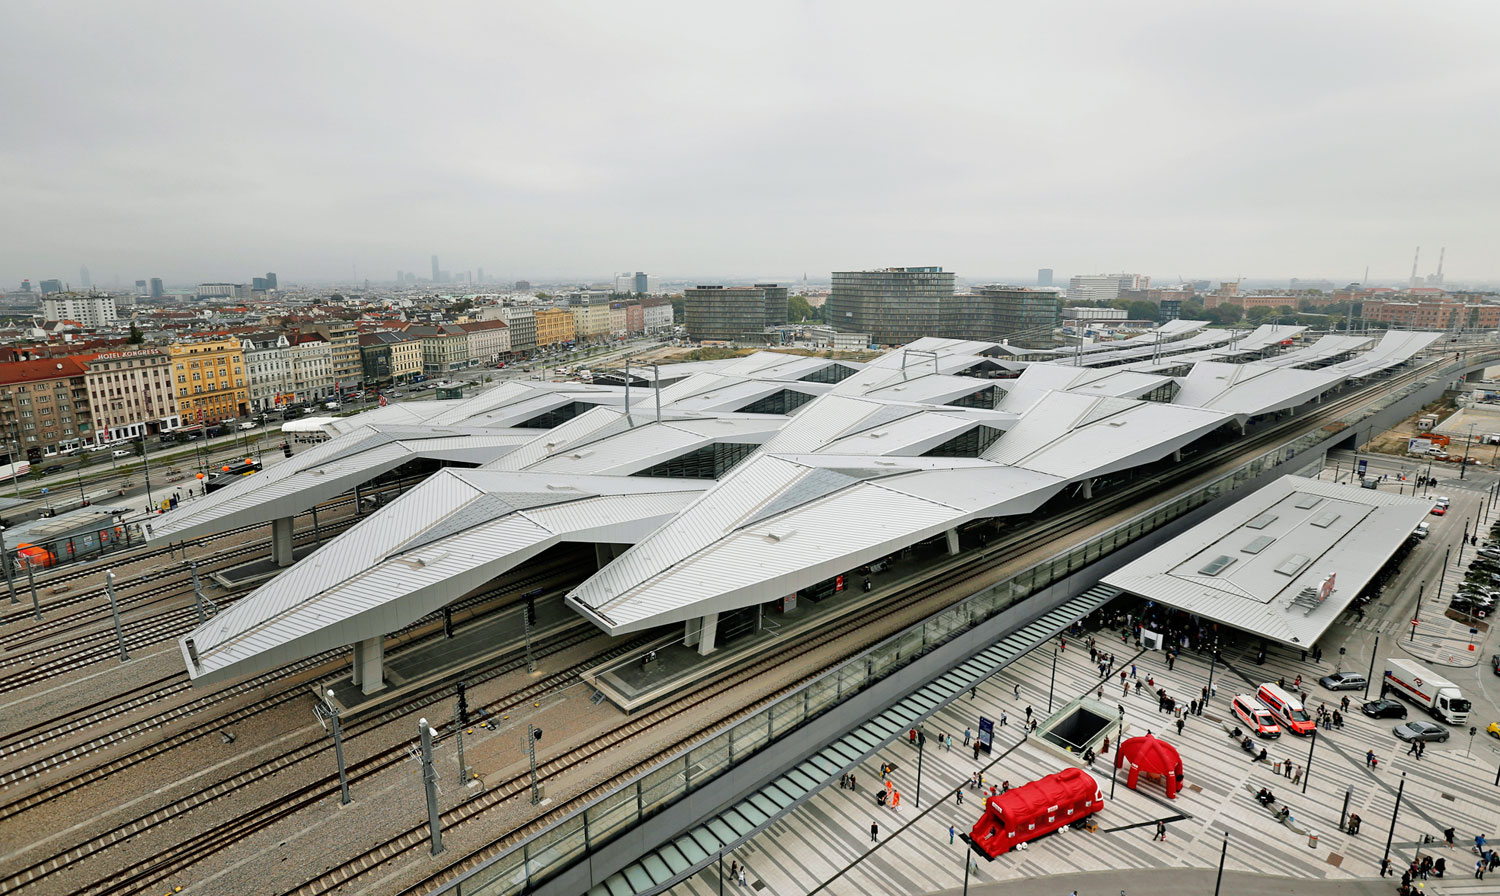 Az új Hauptbahnhof, azaz főpályaudvar Bécsben. Öt évig építették, egymilliárd euróba került. Naponta csaknem 150 ezer ember fordul meg az új tömegközlekedési csomóponton